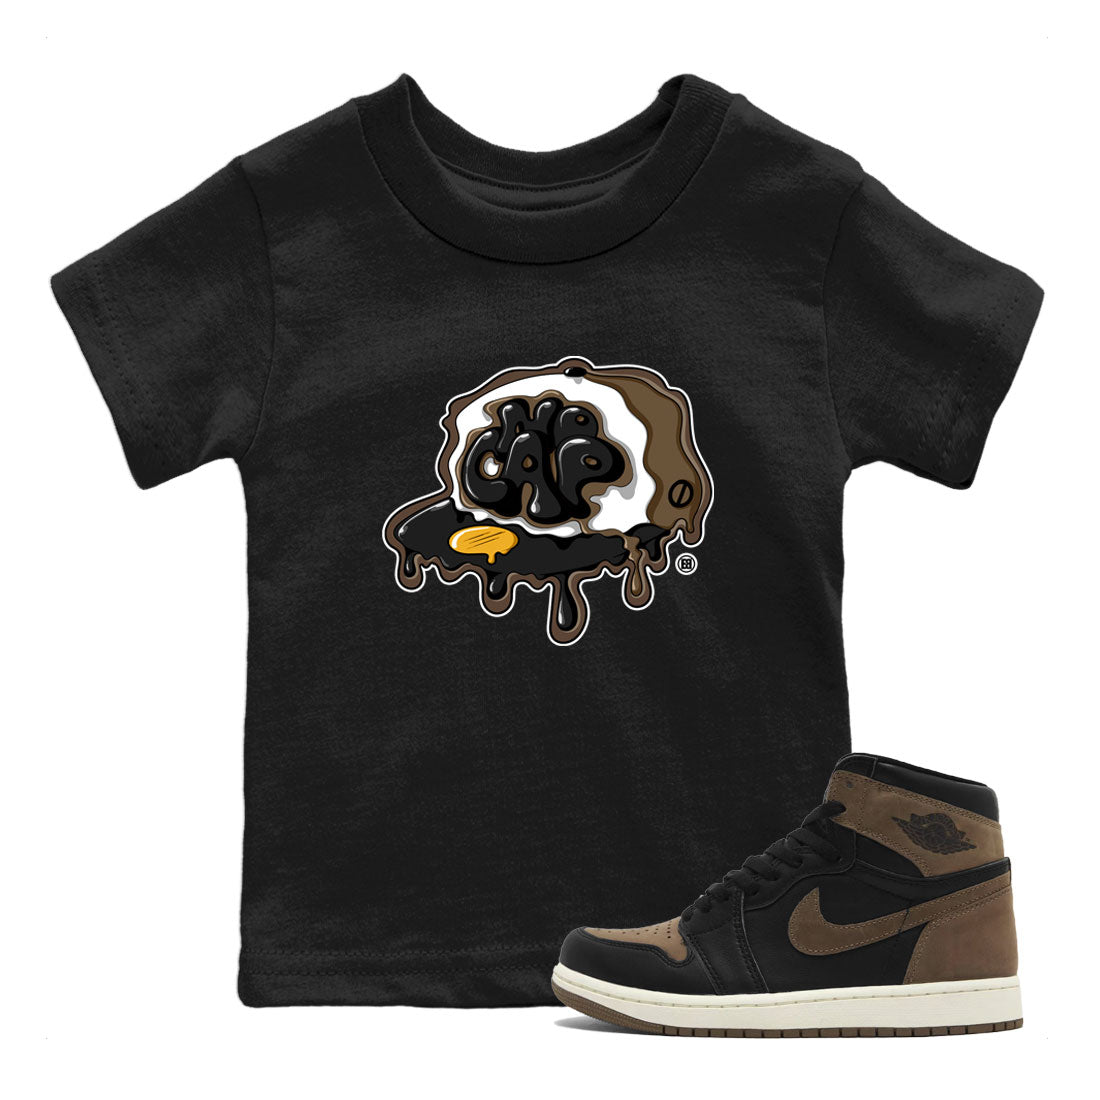 Air Jordan 1 Palomino shirt to match jordans No Cap Streetwear Sneaker Shirt Air Jordan 1 Retro High OG Palomino Drip Gear Zone Sneaker Matching Clothing Baby Toddler Kids Black 1 T-Shirt